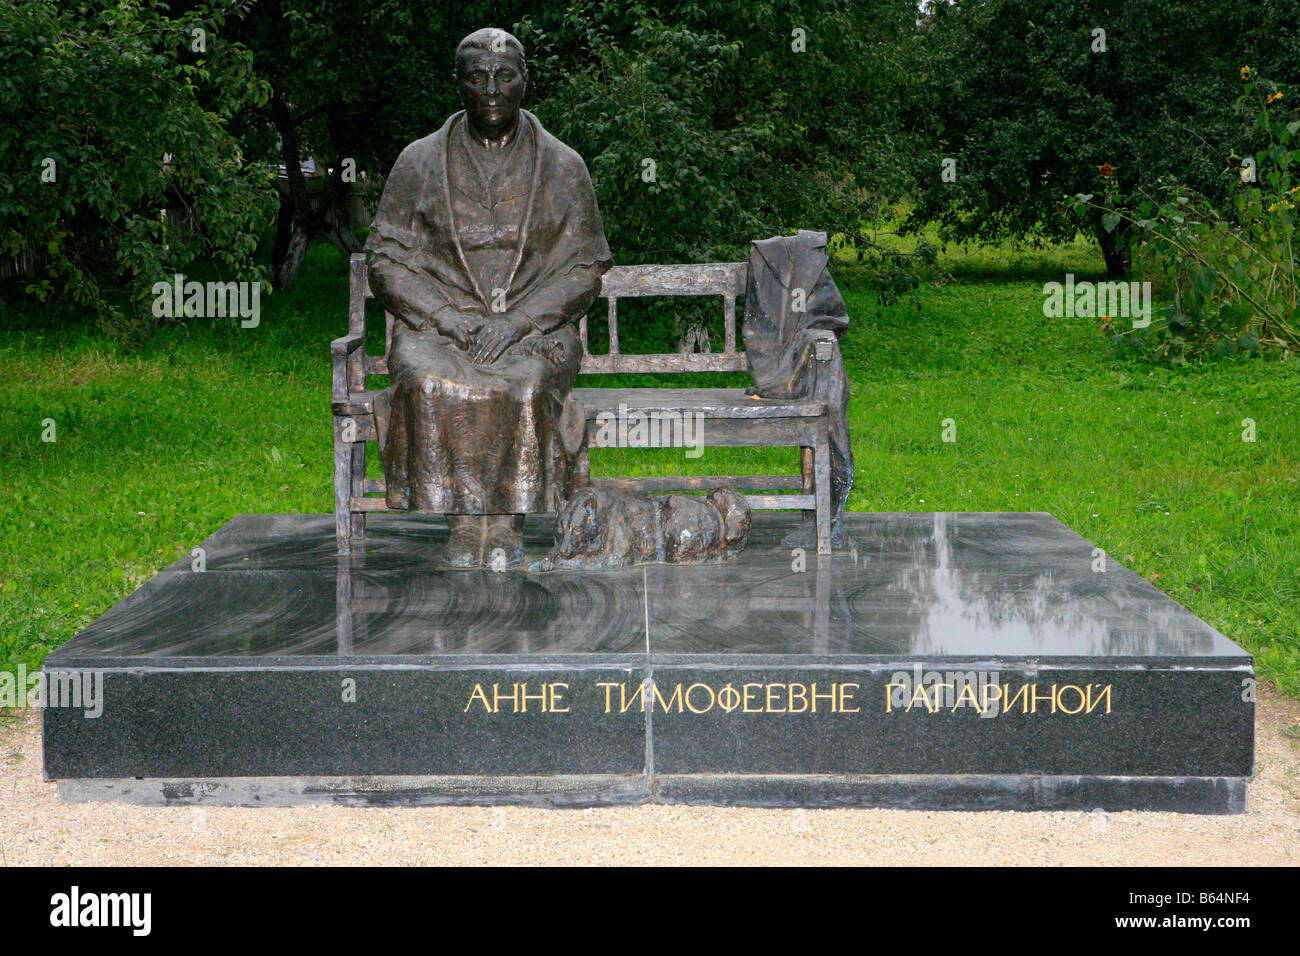 Monument à Anna Timofeyevna Gagarina (1903-1984), mère du premier humain dans l'espace Youri Gagarine à 3068 (anciennement Klushino), Russie Banque D'Images